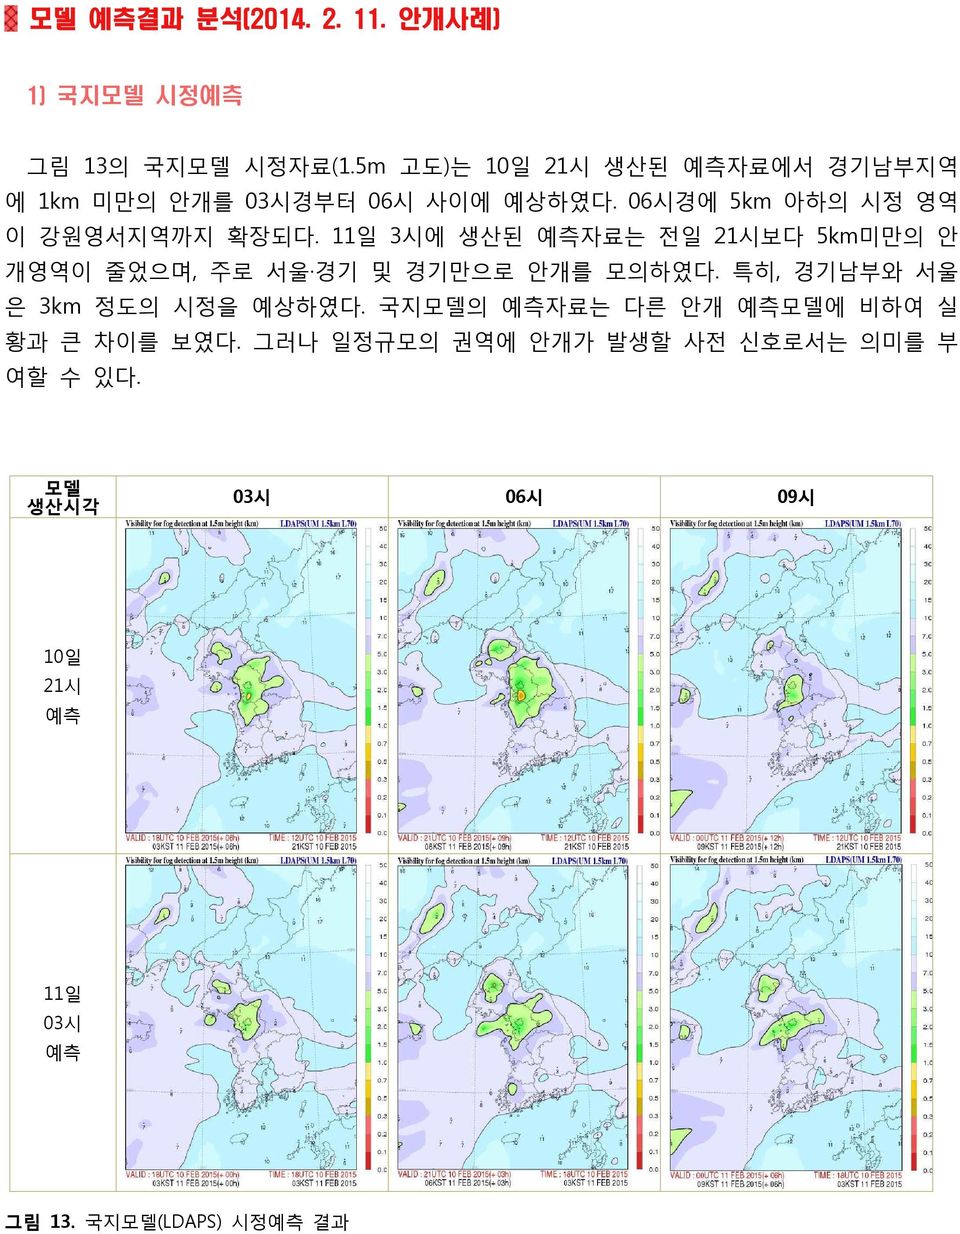 11일 3시에 생산된 예측자료는 전일 21시보다 5km미만의 안 개영역이 줄었으며, 주로 서울 경기 및 경기만으로 안개를 모의하였다. 특히, 경기남부와 서울 은 3km 정도의 시정을 예상하였다.